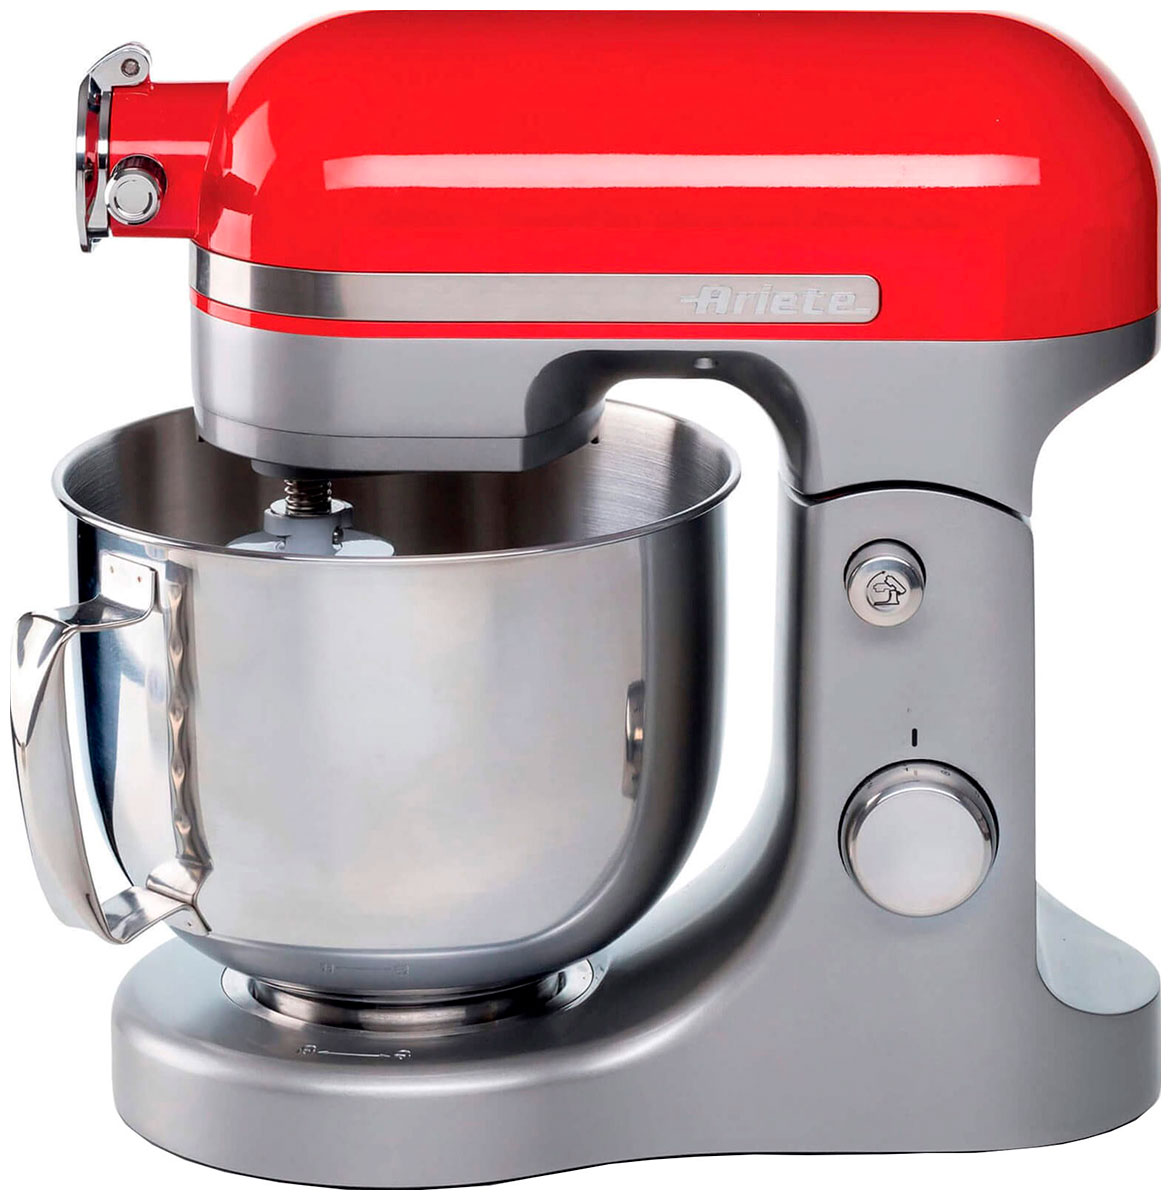 Кухонная машина Ariete Moderna 1589/00 красный кофеварка ariete 1318 00 moderna красный